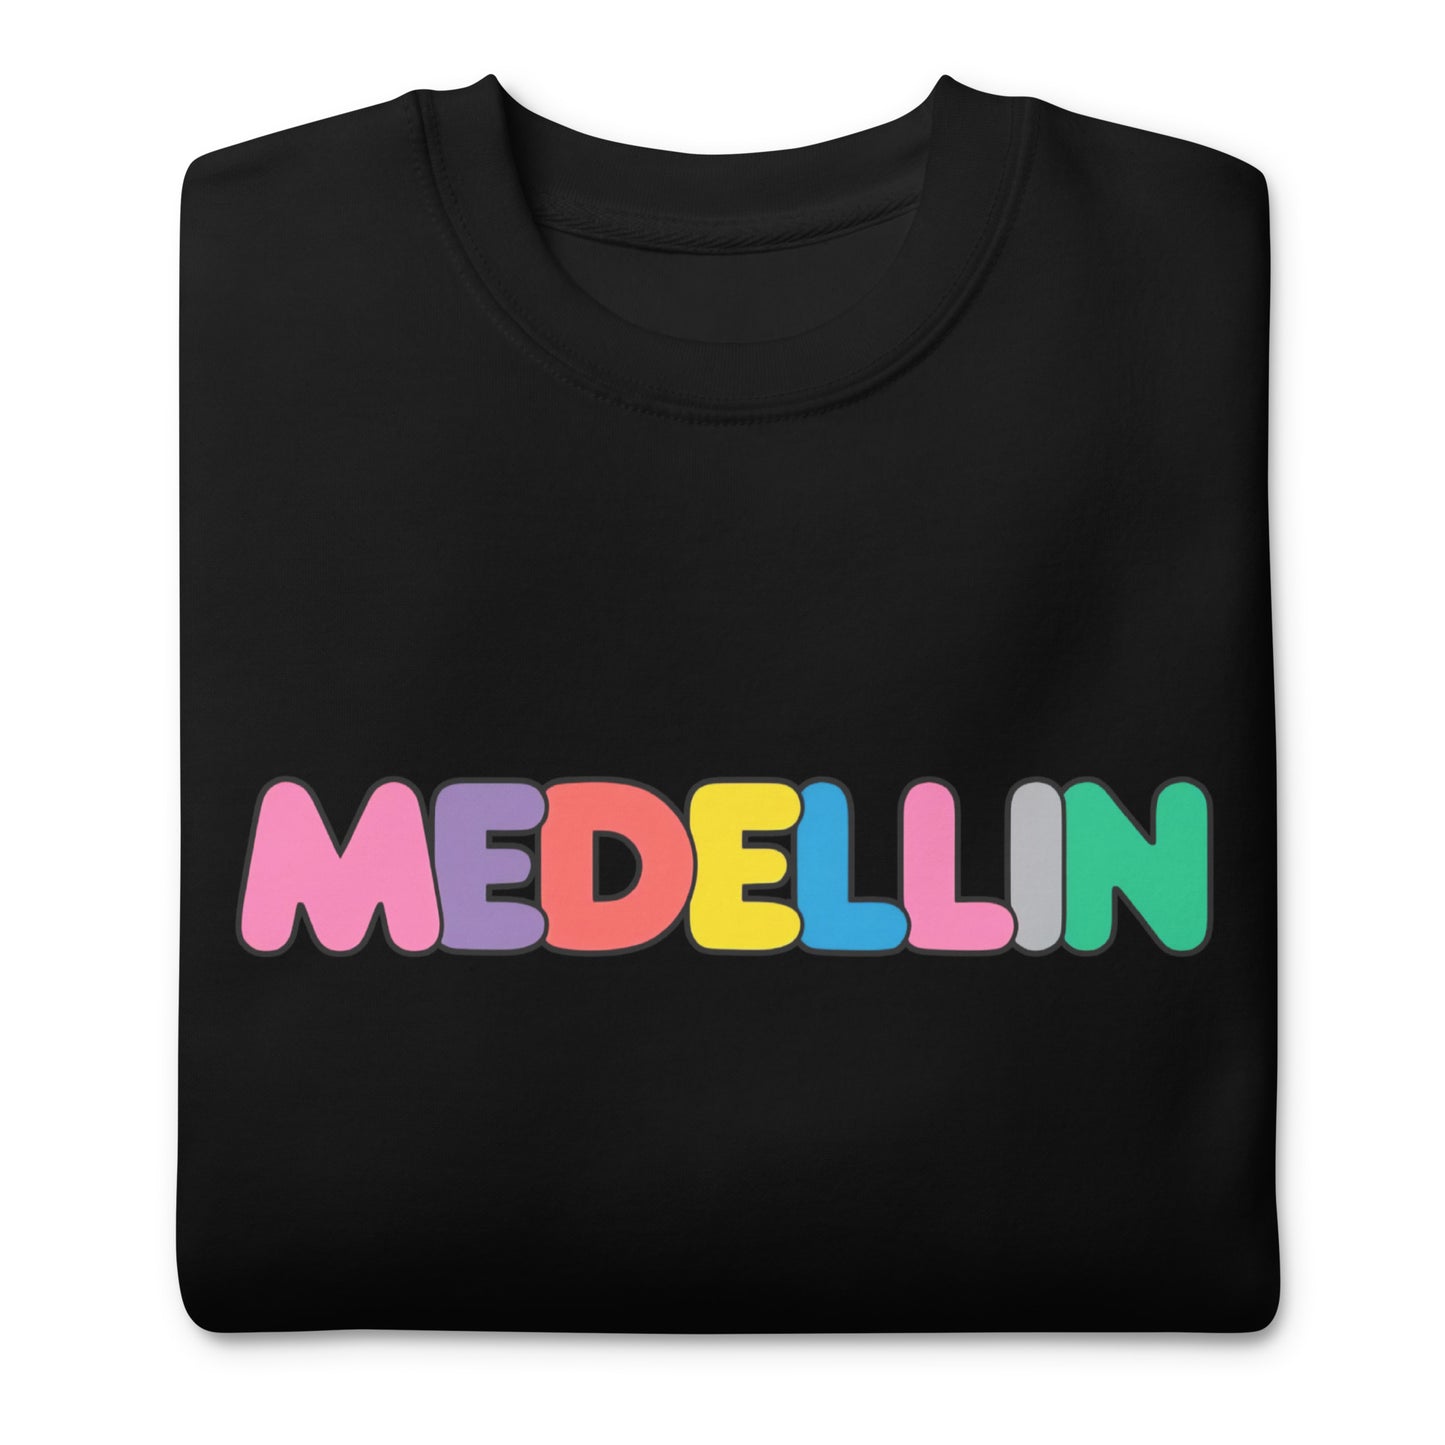 Suéter de Color Medellin ,Descubre calidad excepcional y estampados duraderos. Encuentra estilo y orgullo en cada prenda. Compra ahora!